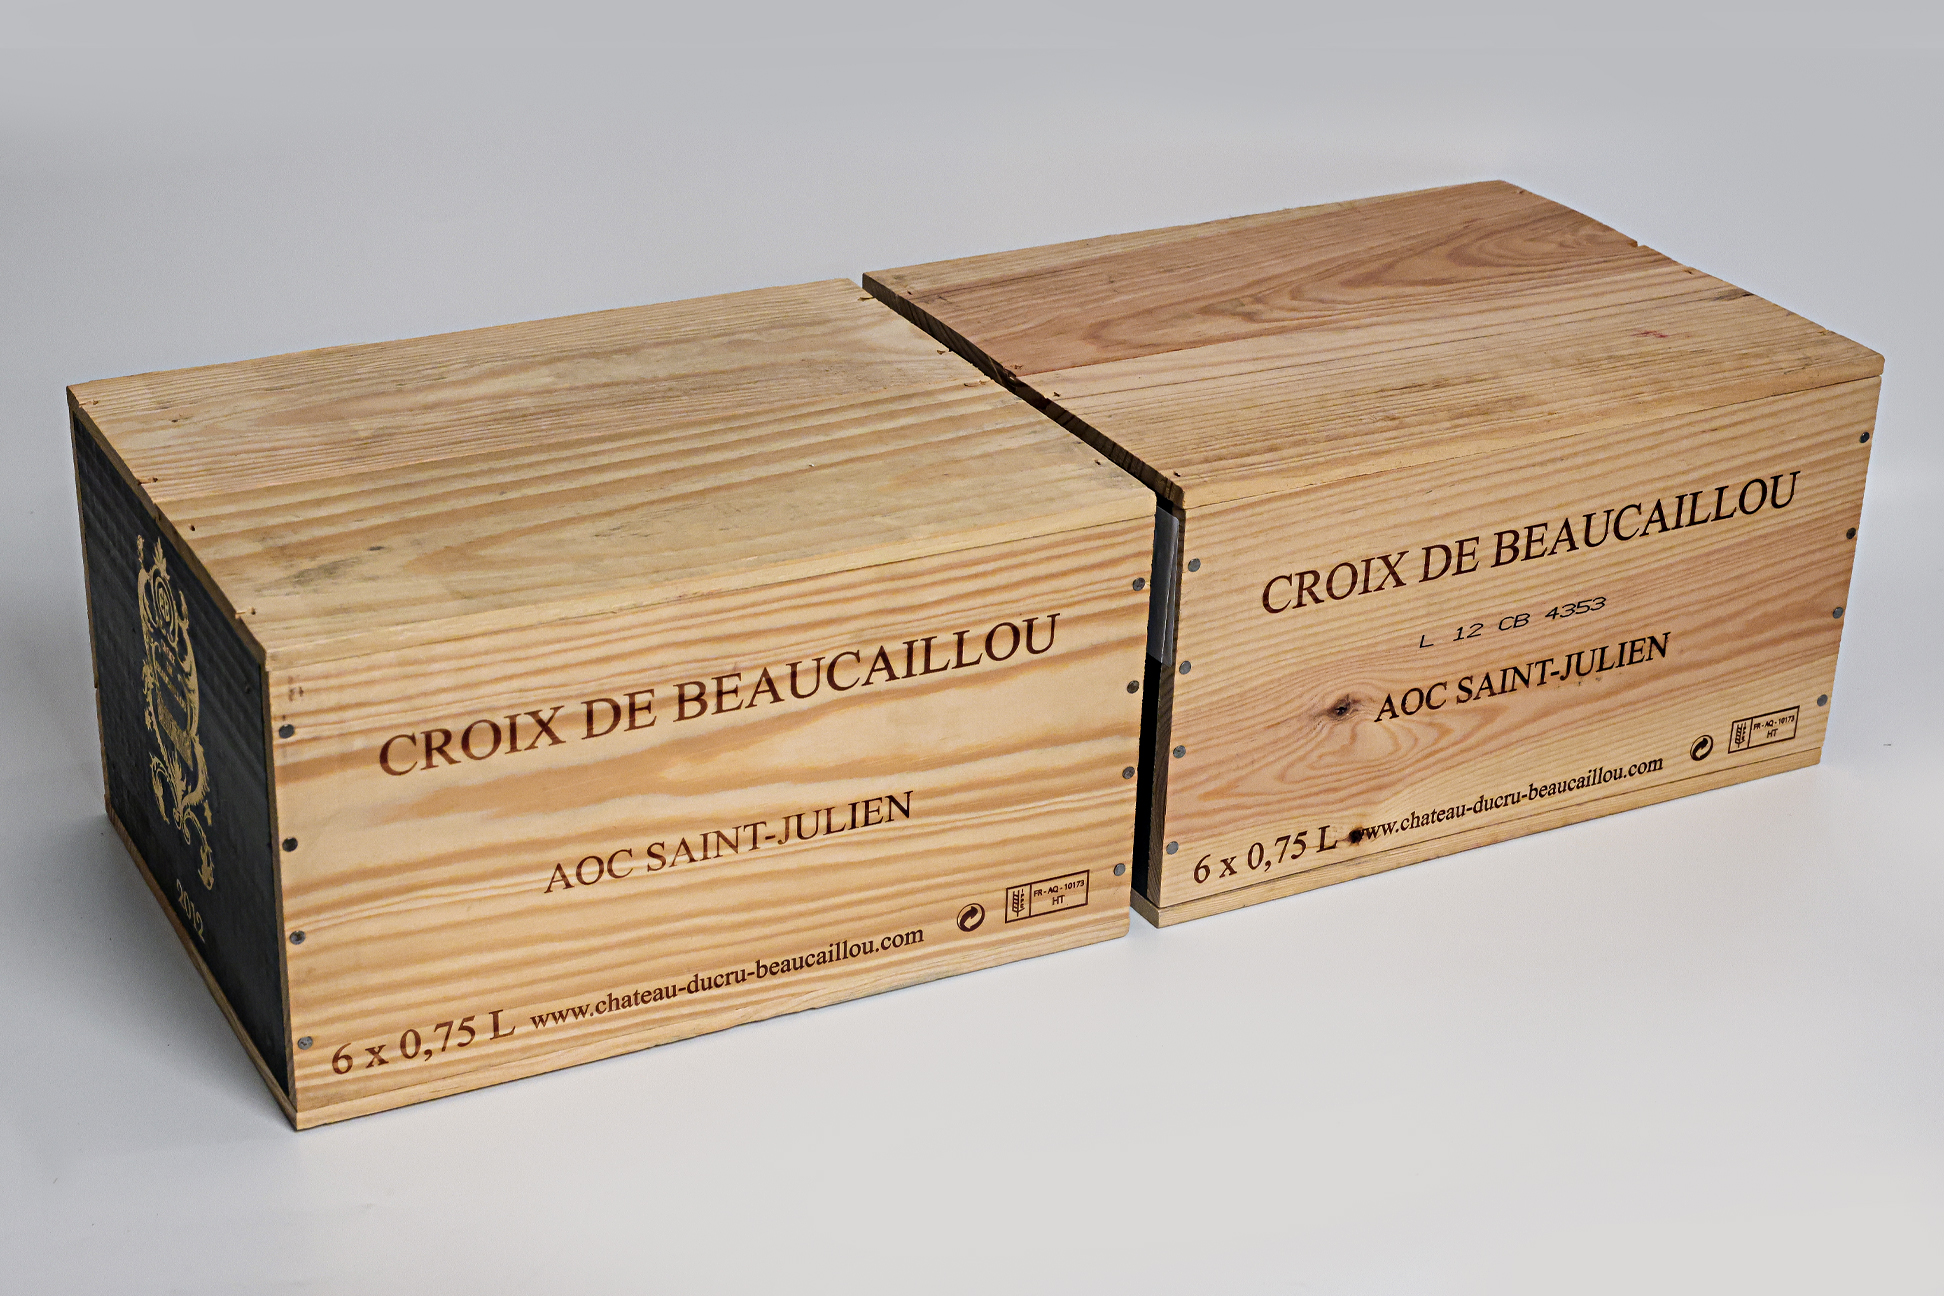 CH. DUCRU-BEAUCAILLOU 'LA CROIX DE BEAUCAILLOU' 2012 (12 BT)